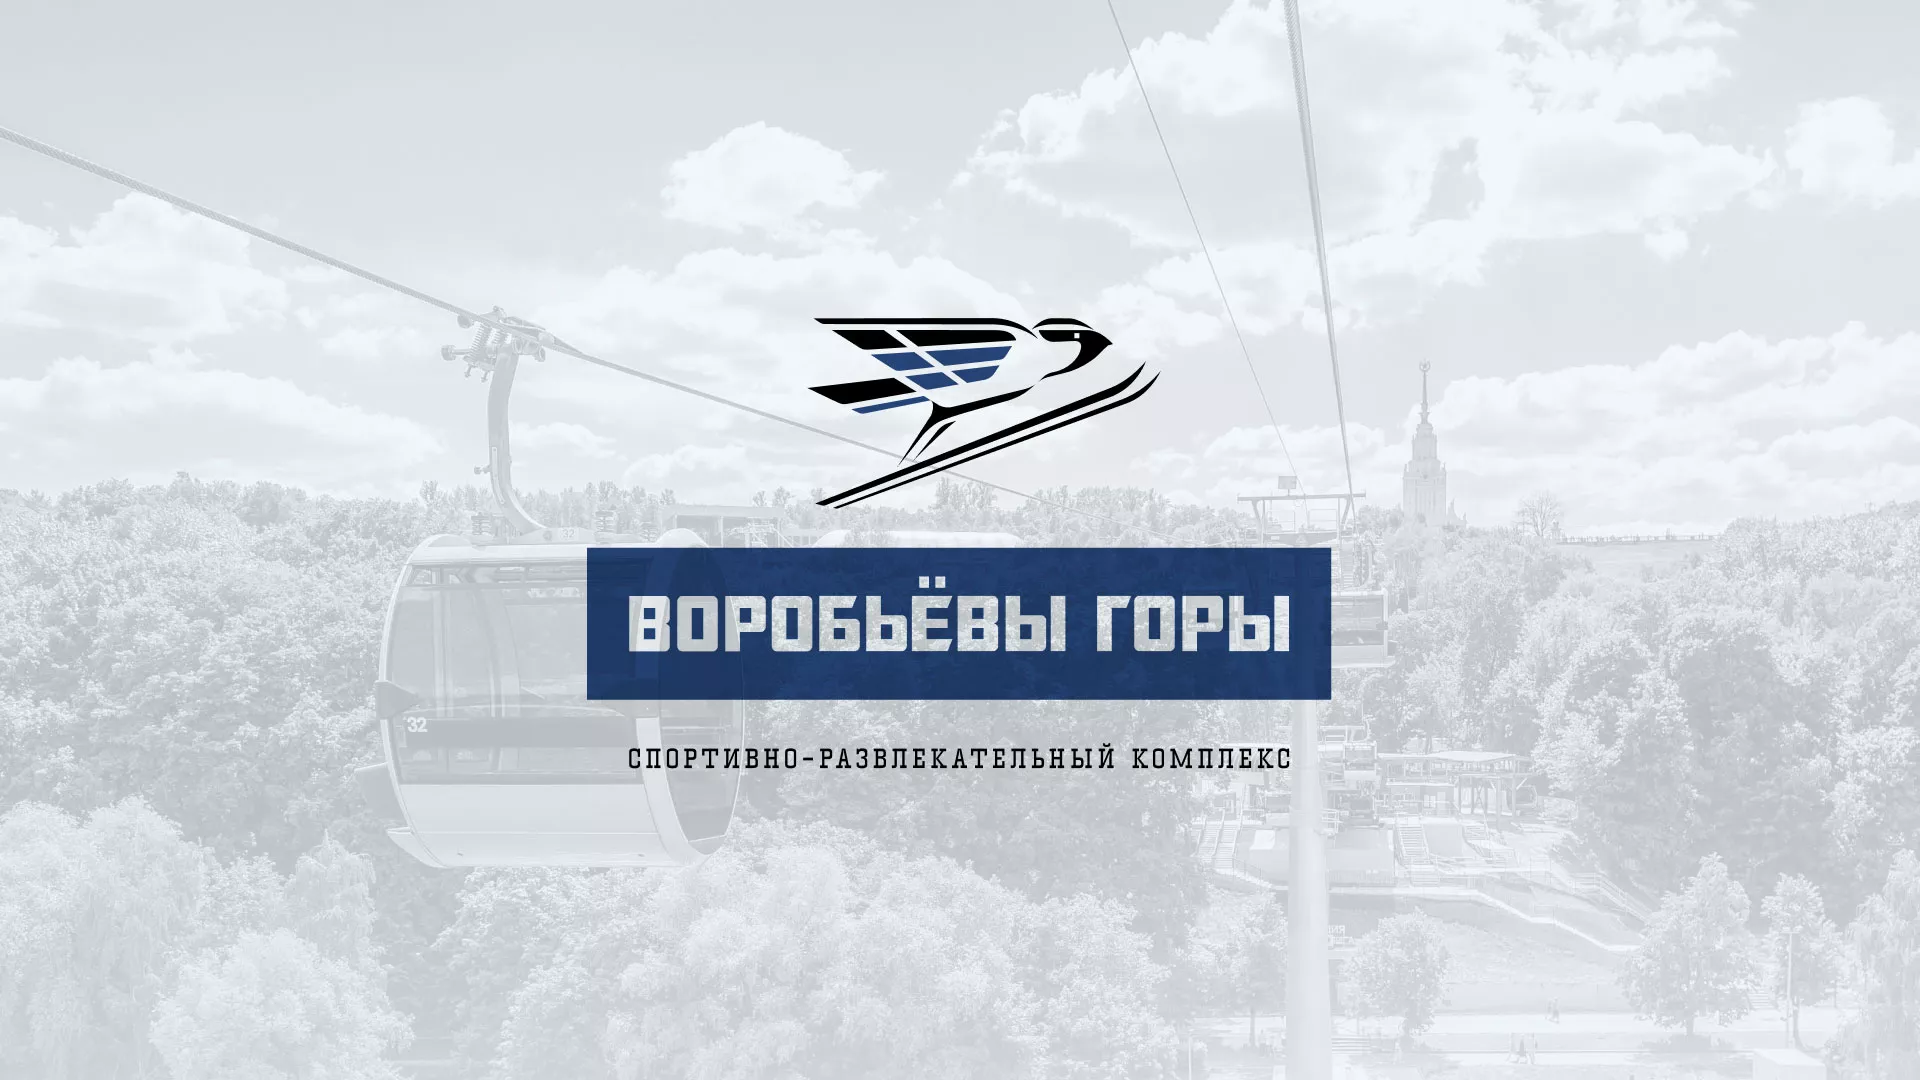 Разработка сайта в Николаевске для спортивно-развлекательного комплекса «Воробьёвы горы»